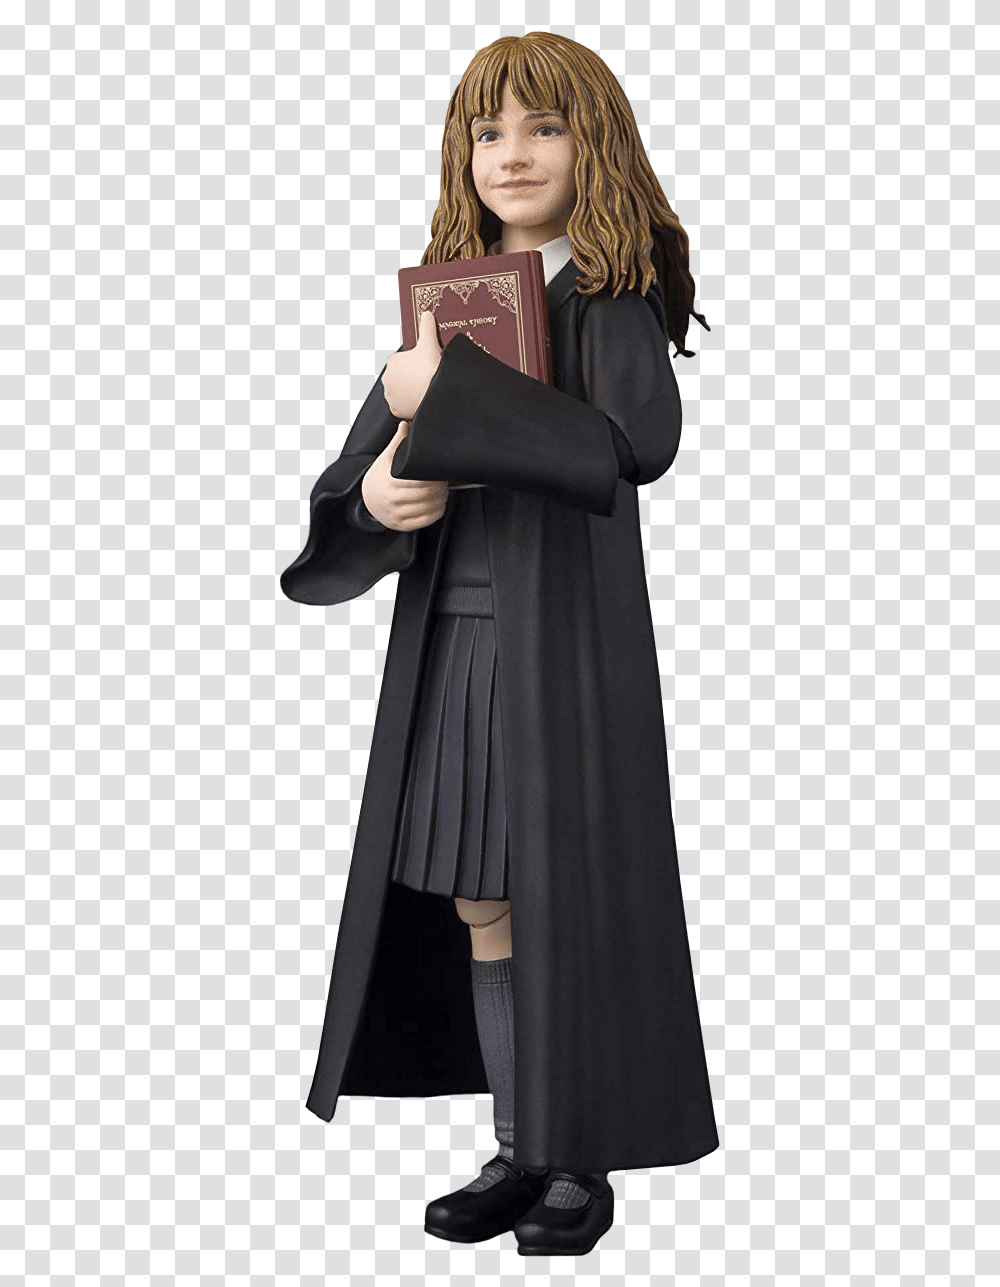 Figuarts Harry Potter Hermione, Person, Fashion, Cloak Transparent Png